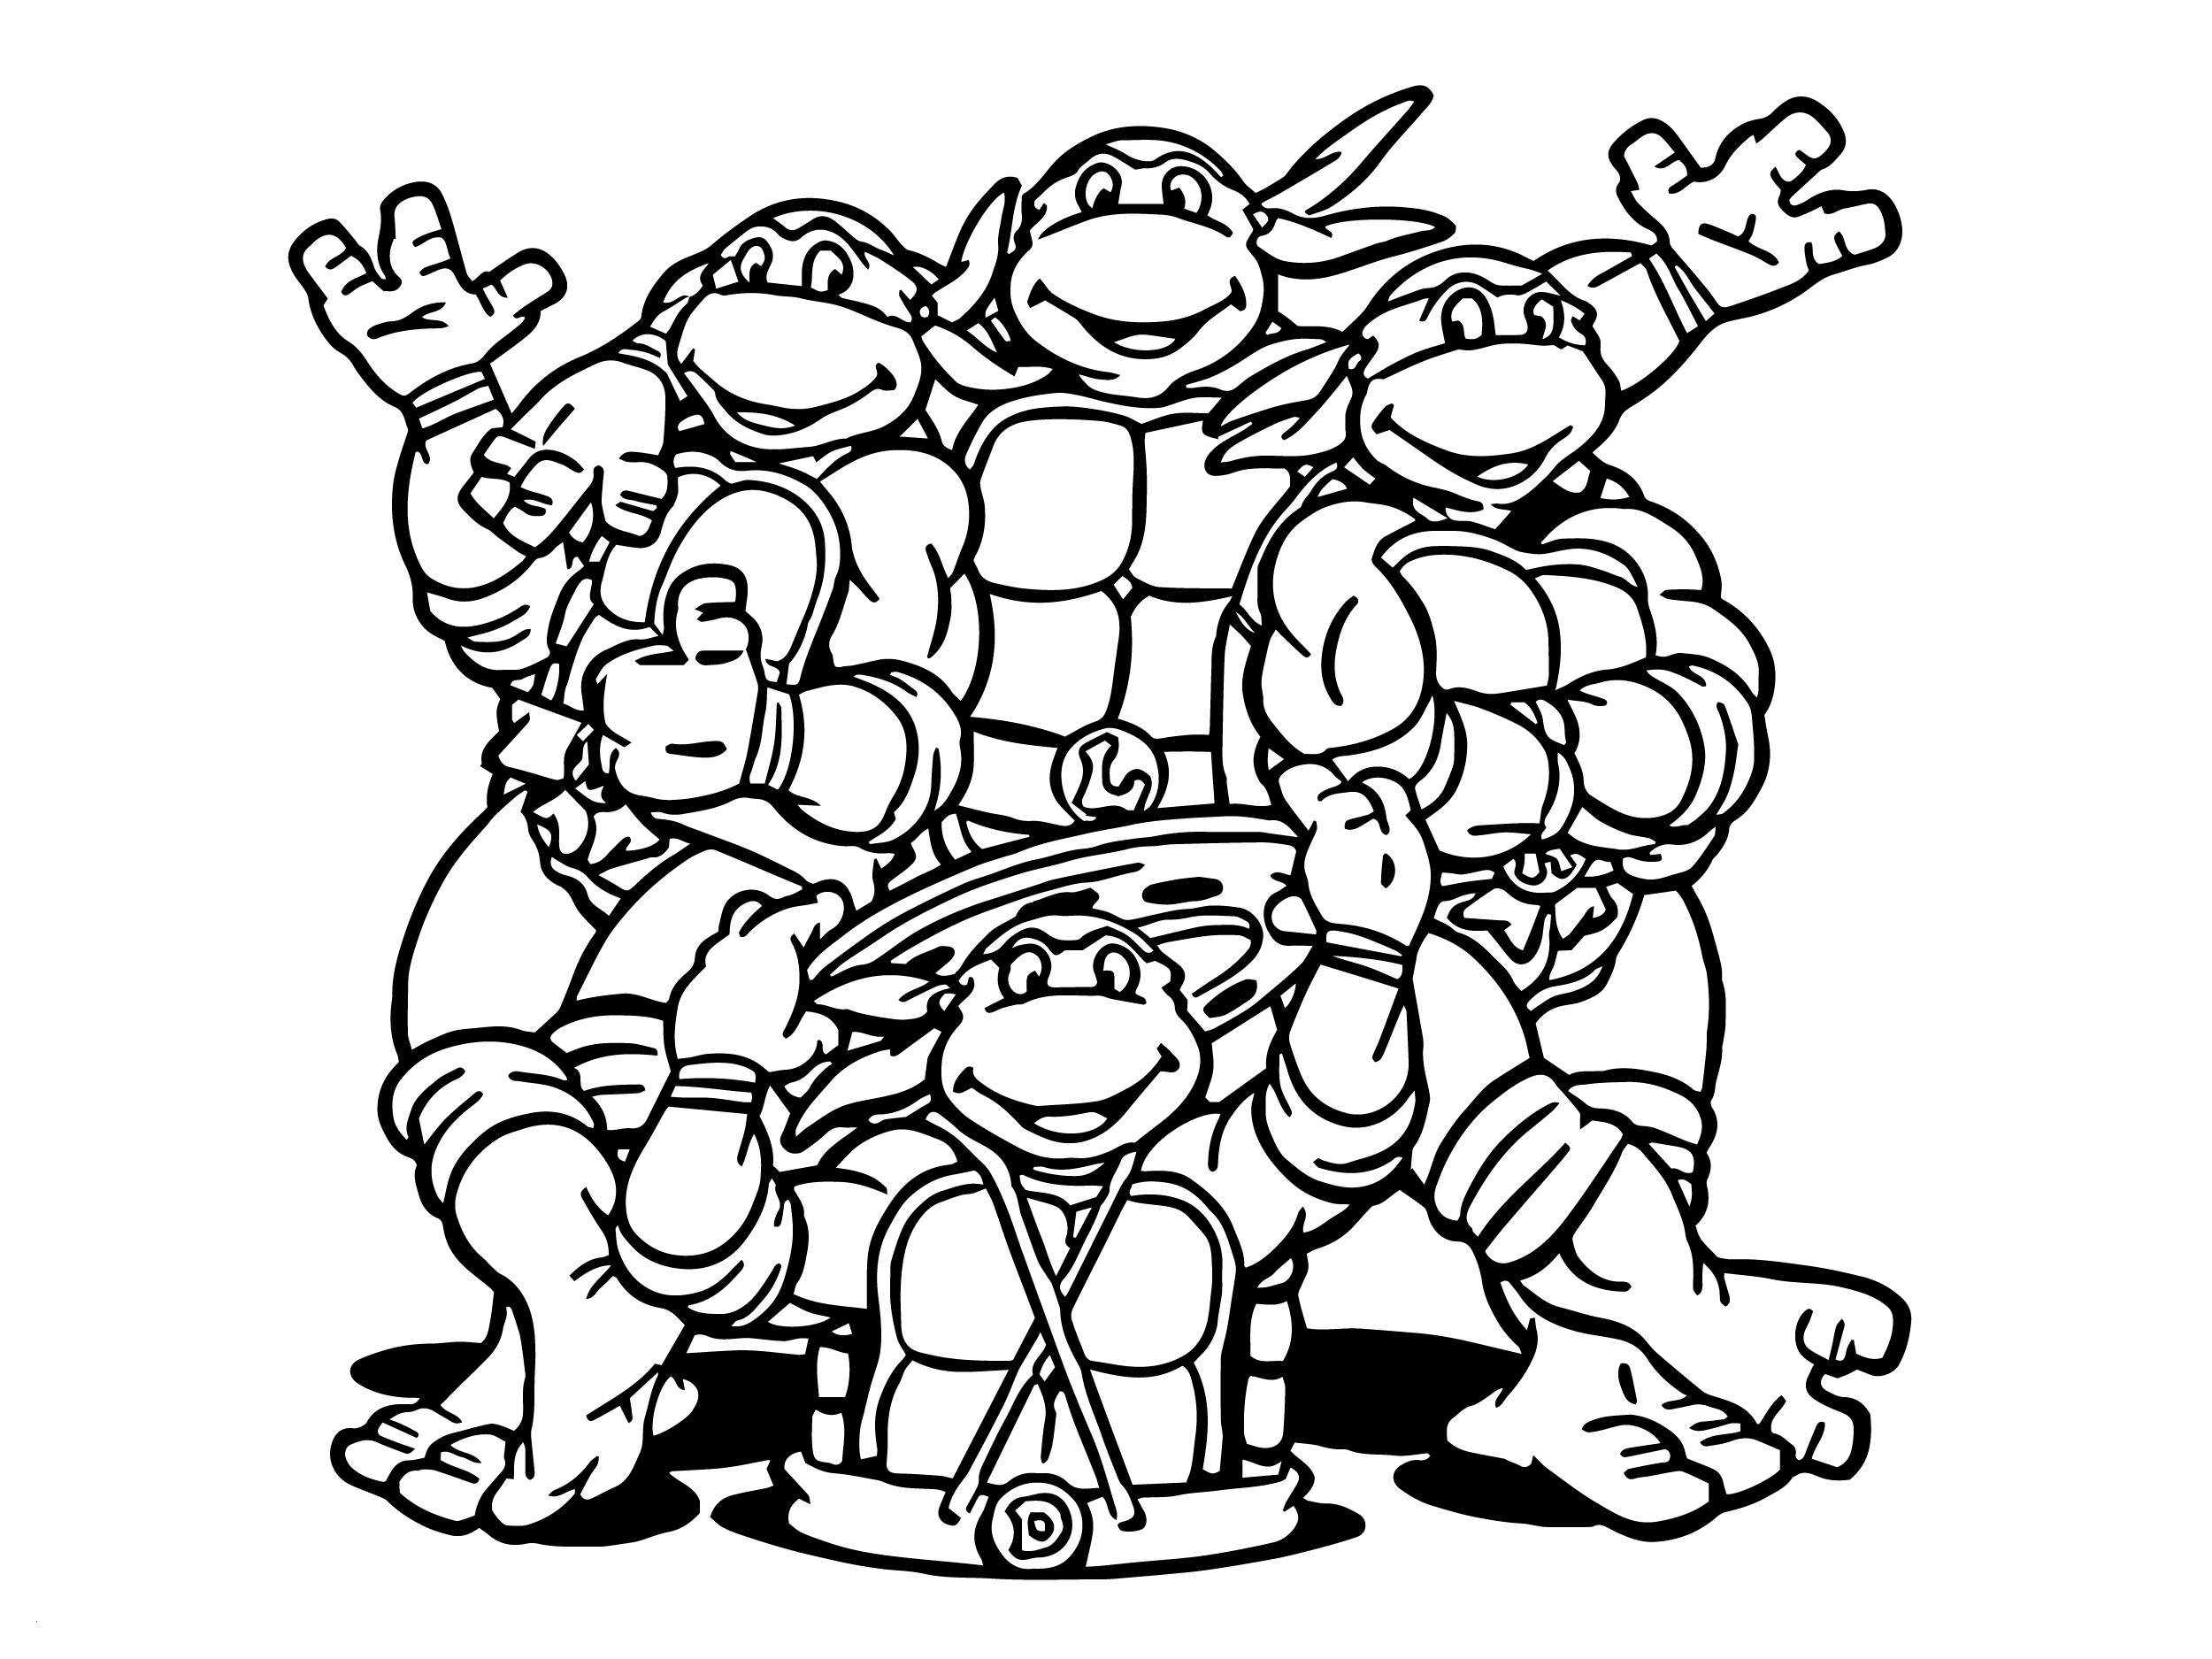 Teenage Mutant Ninja Turtles Coloring Pages - Best ...